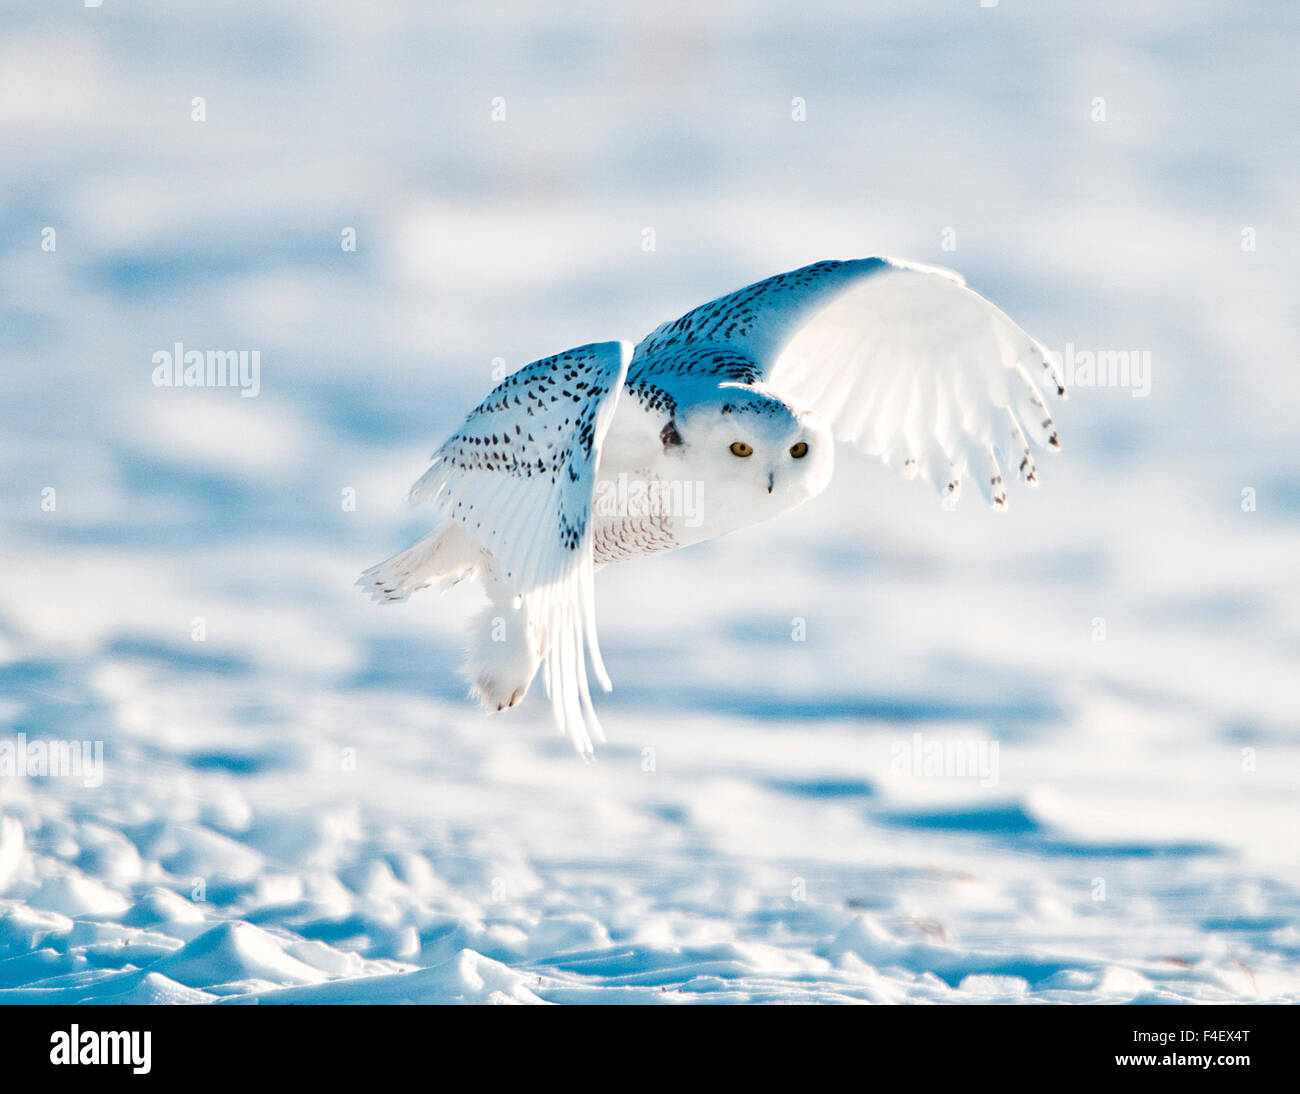 USA, Minnesota, Vermillion. Snowy Owl in flight Stock Photo - Alamy